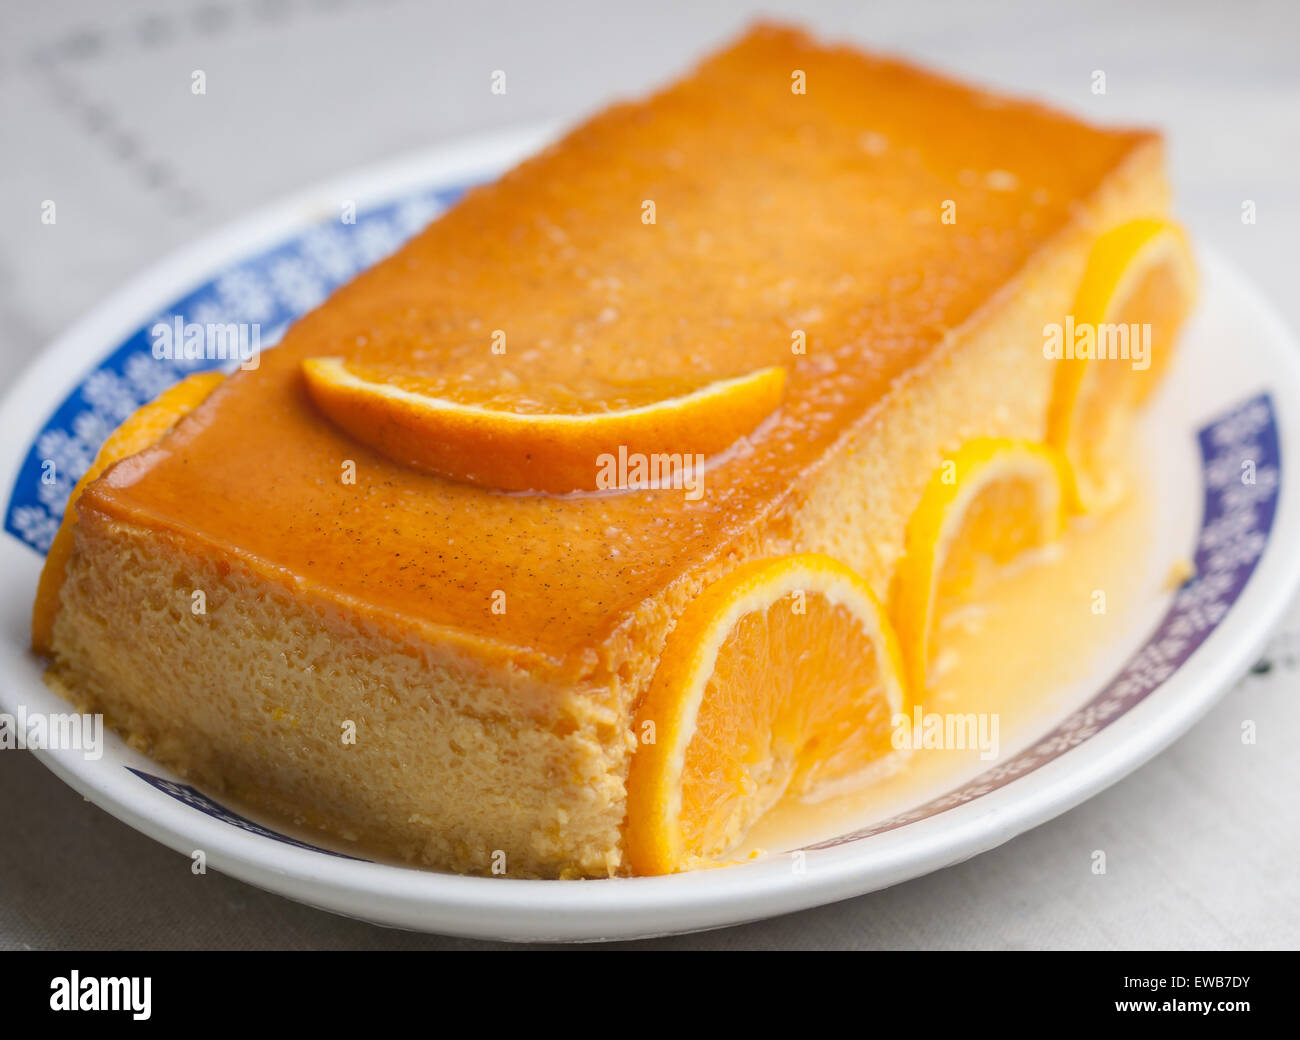 Orange crema pasticcera in un studio shot. Un delizioso dessert. Foto Stock